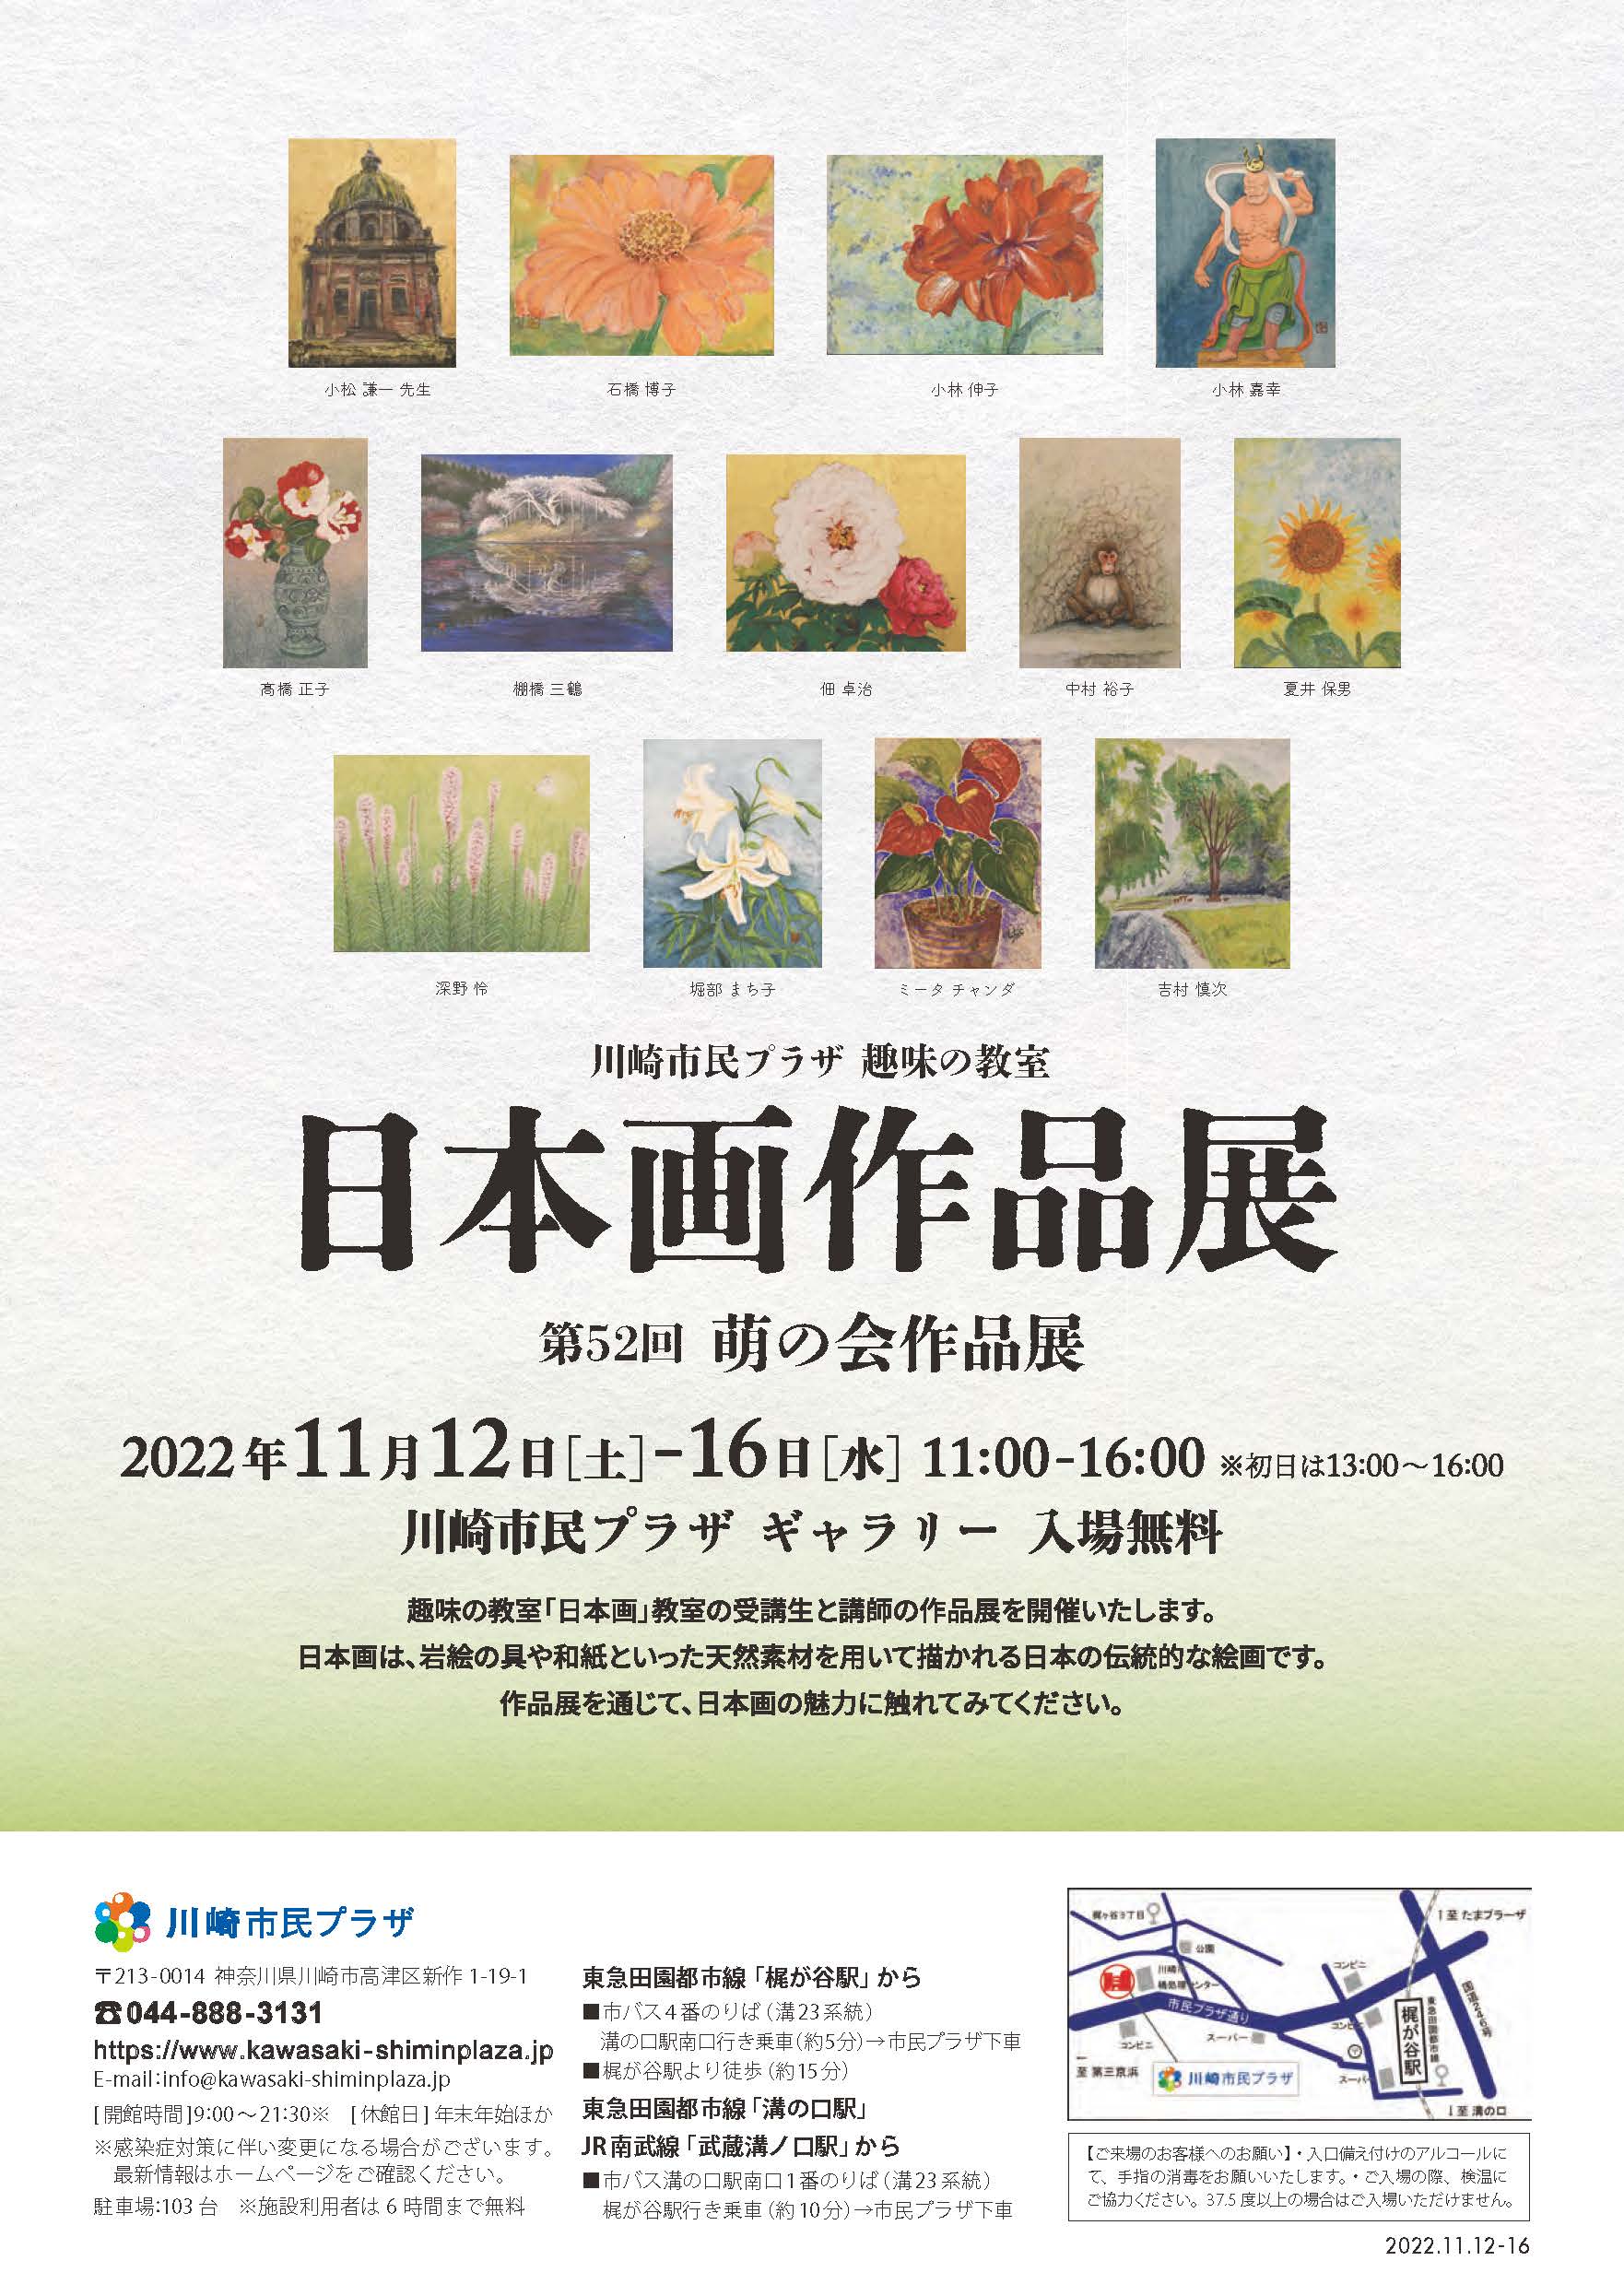 【2022年11月12-16日】趣味の教室「日本画」作品展